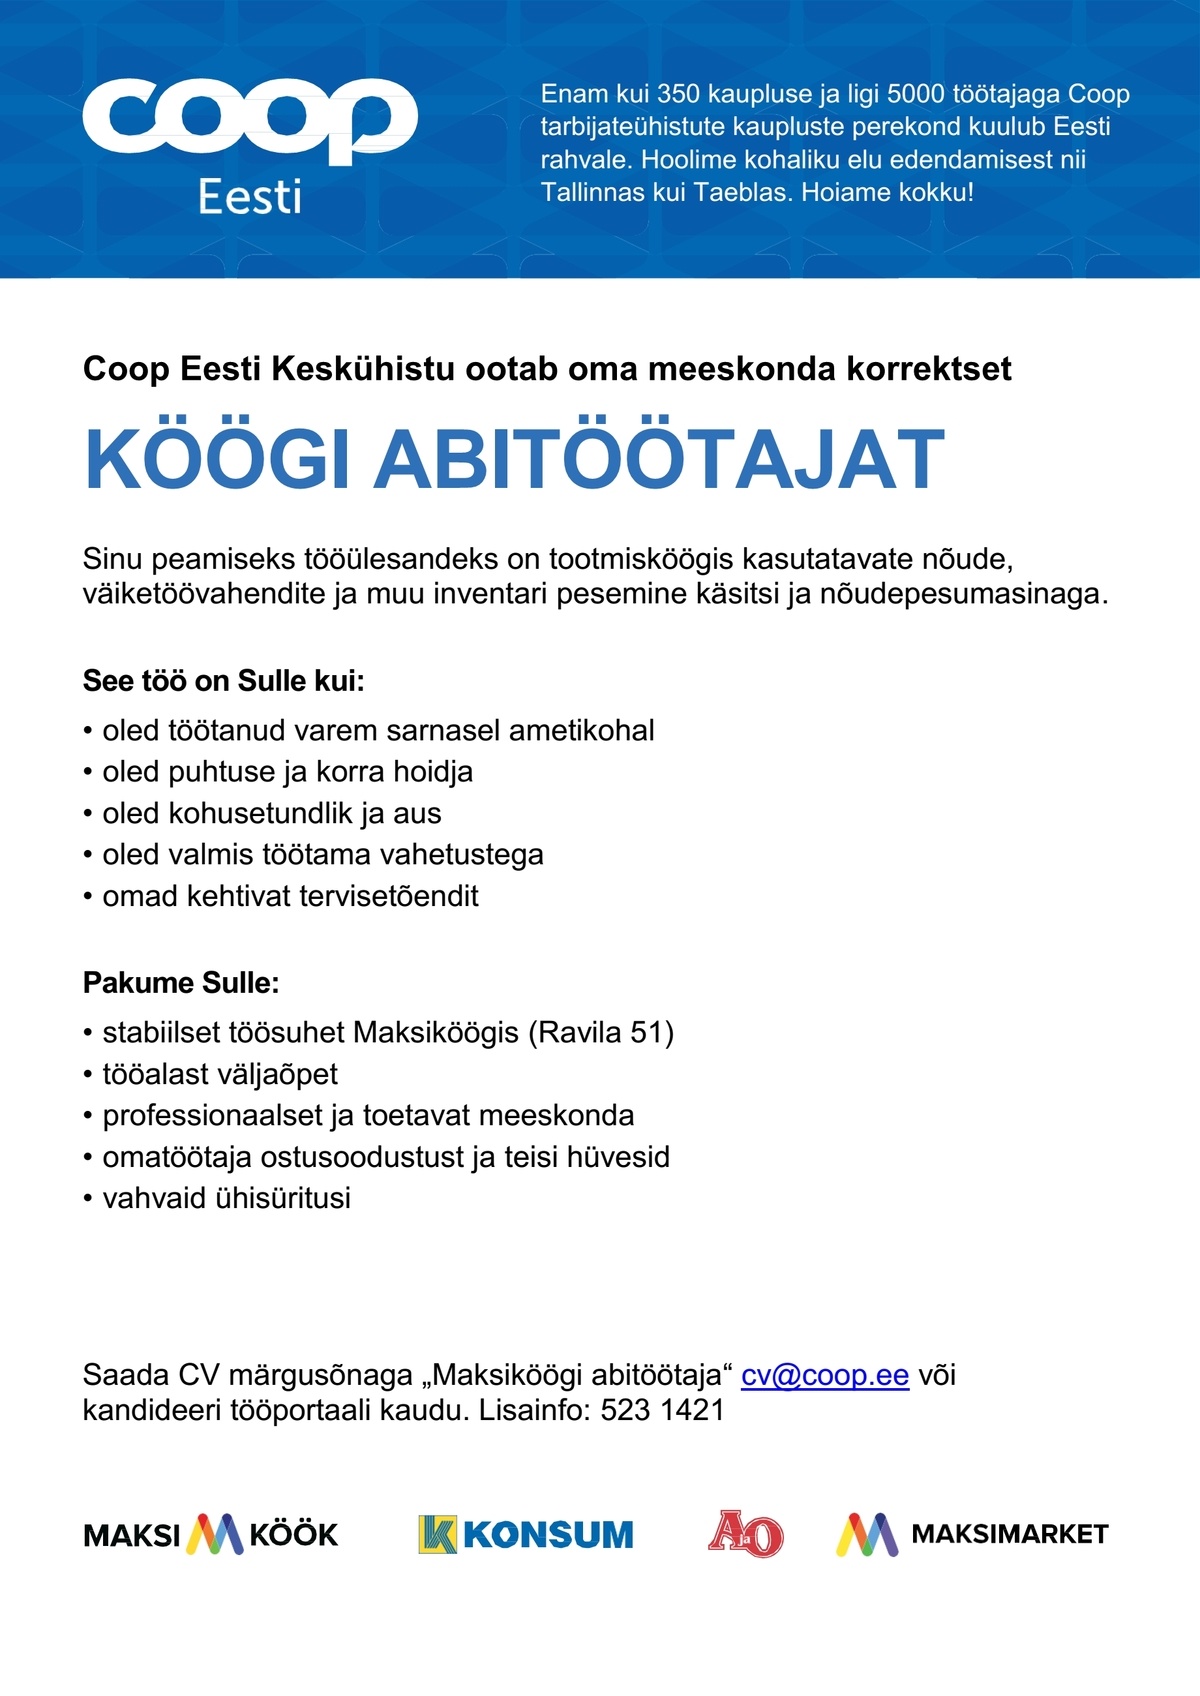 Coop Eesti Keskühistu Köögi abitöötaja (Tartu Maksiköök)